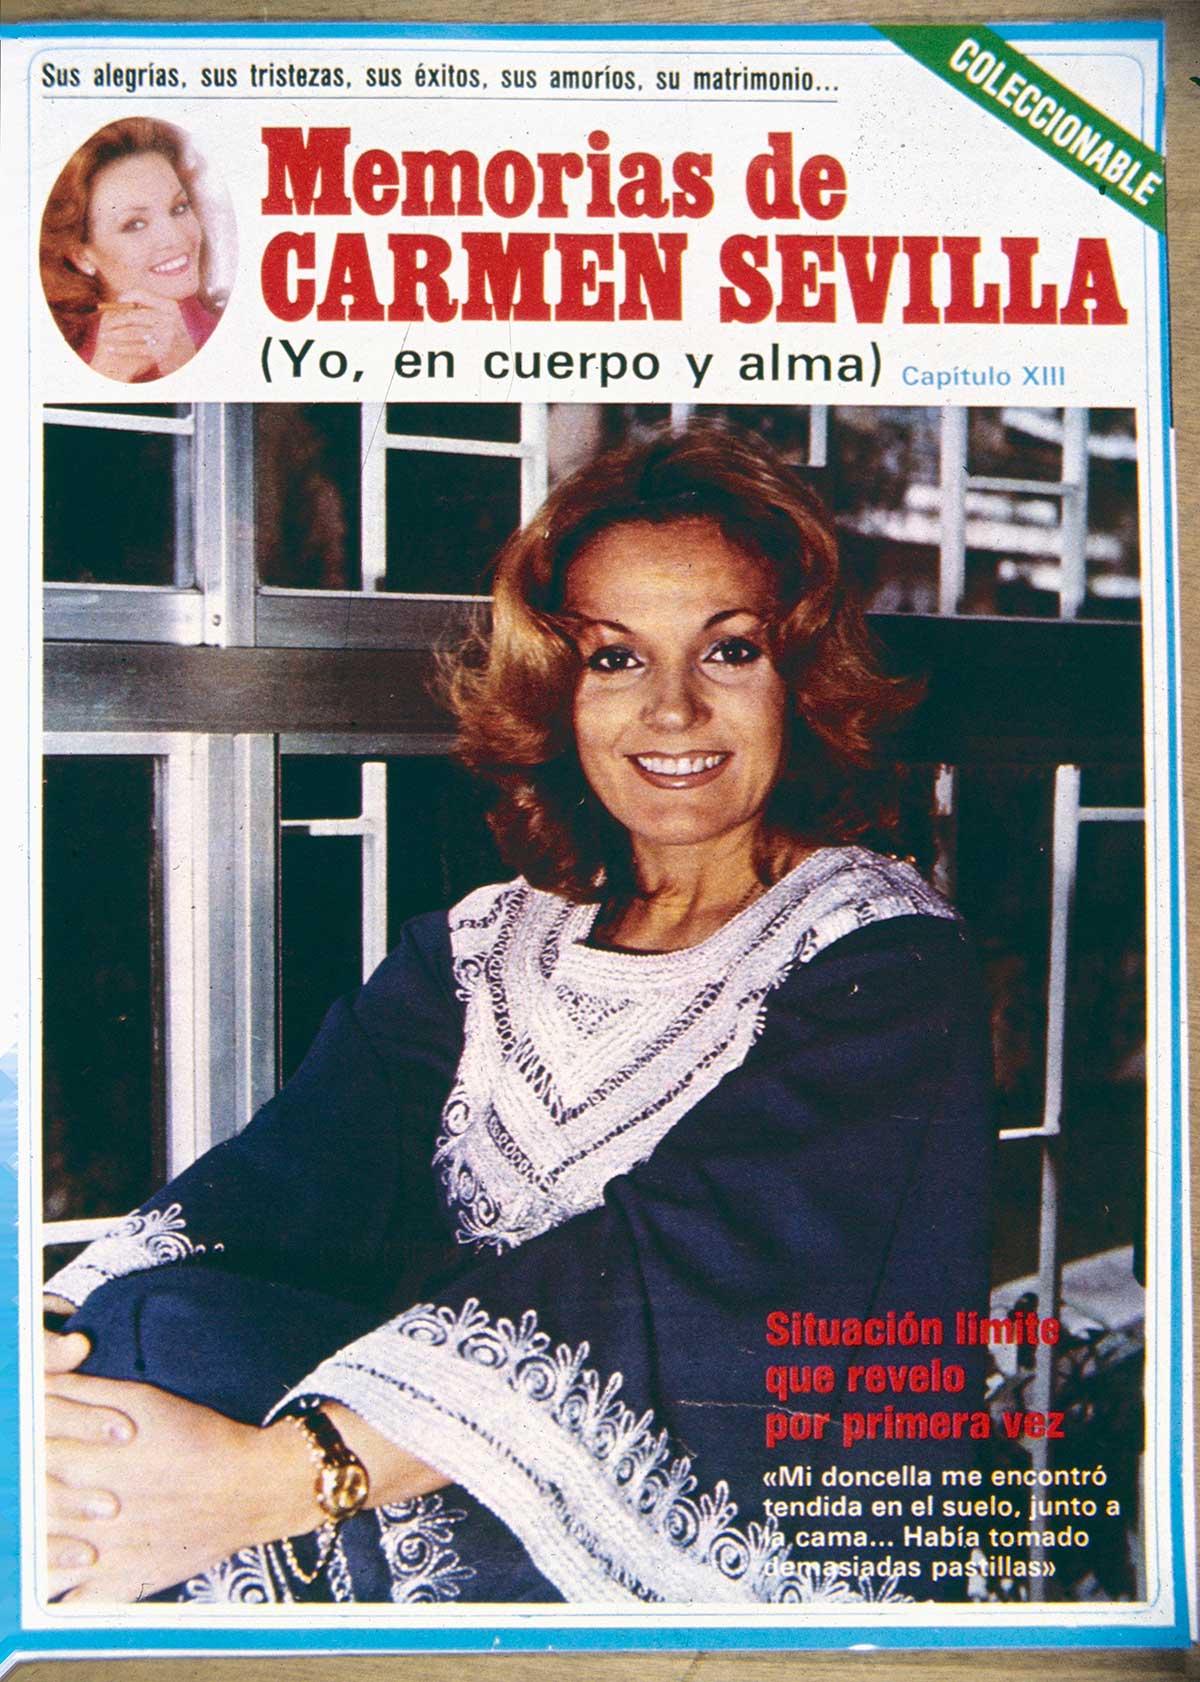 Carmen-Sevilla-sobredosis-pastillas